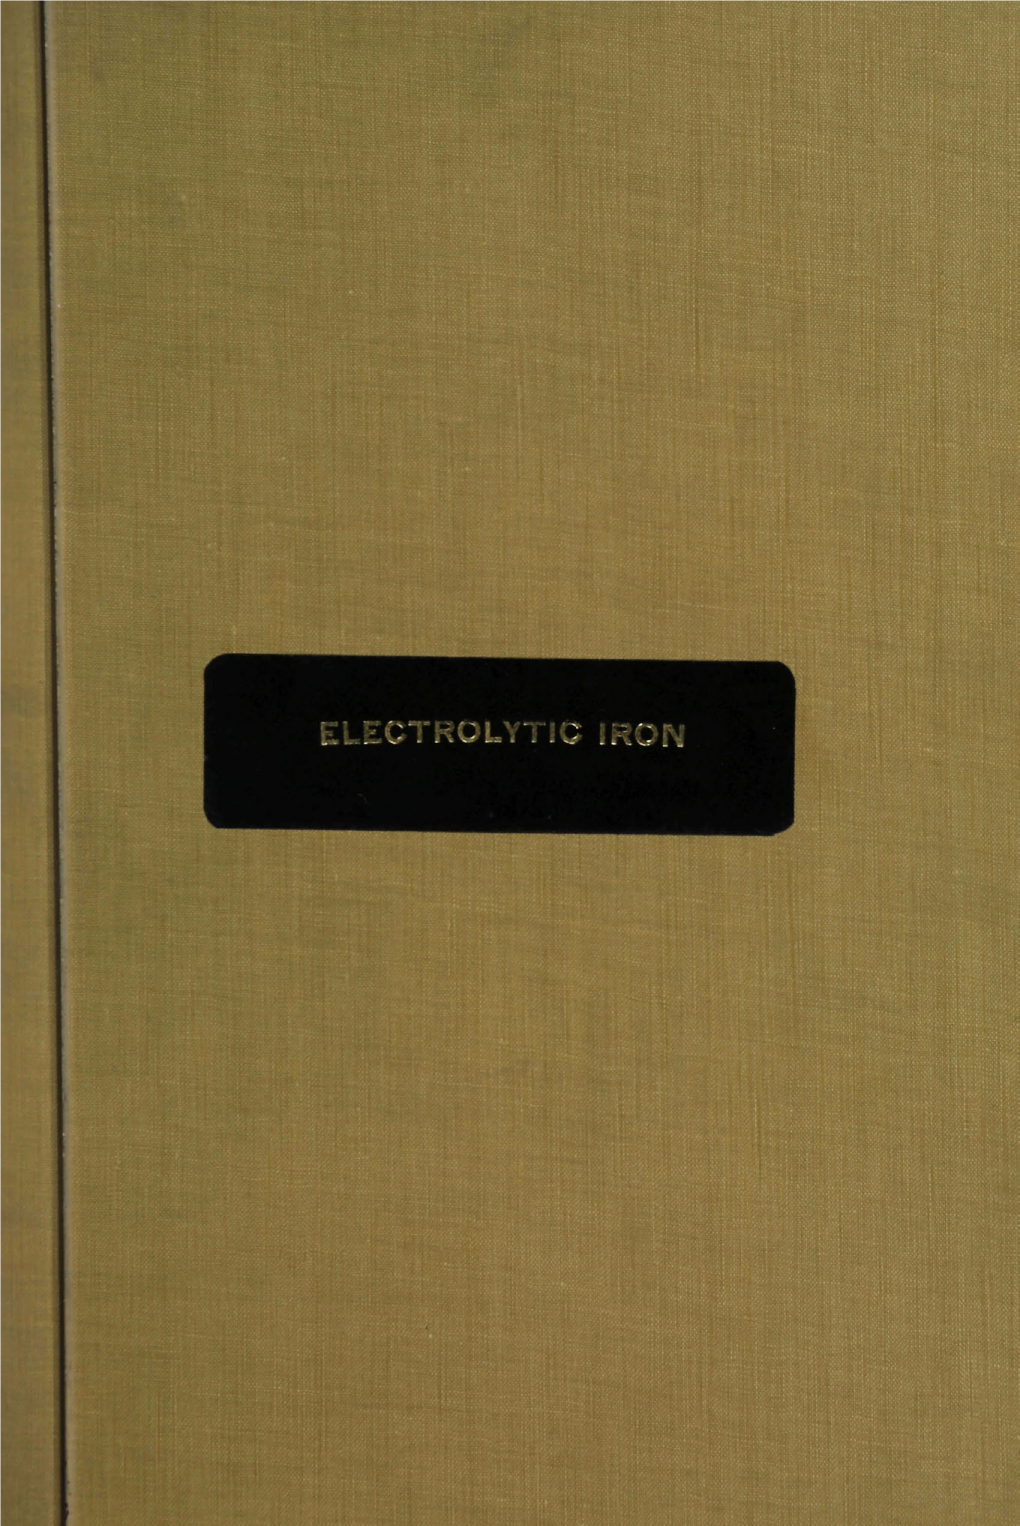 Electrolytic Iron